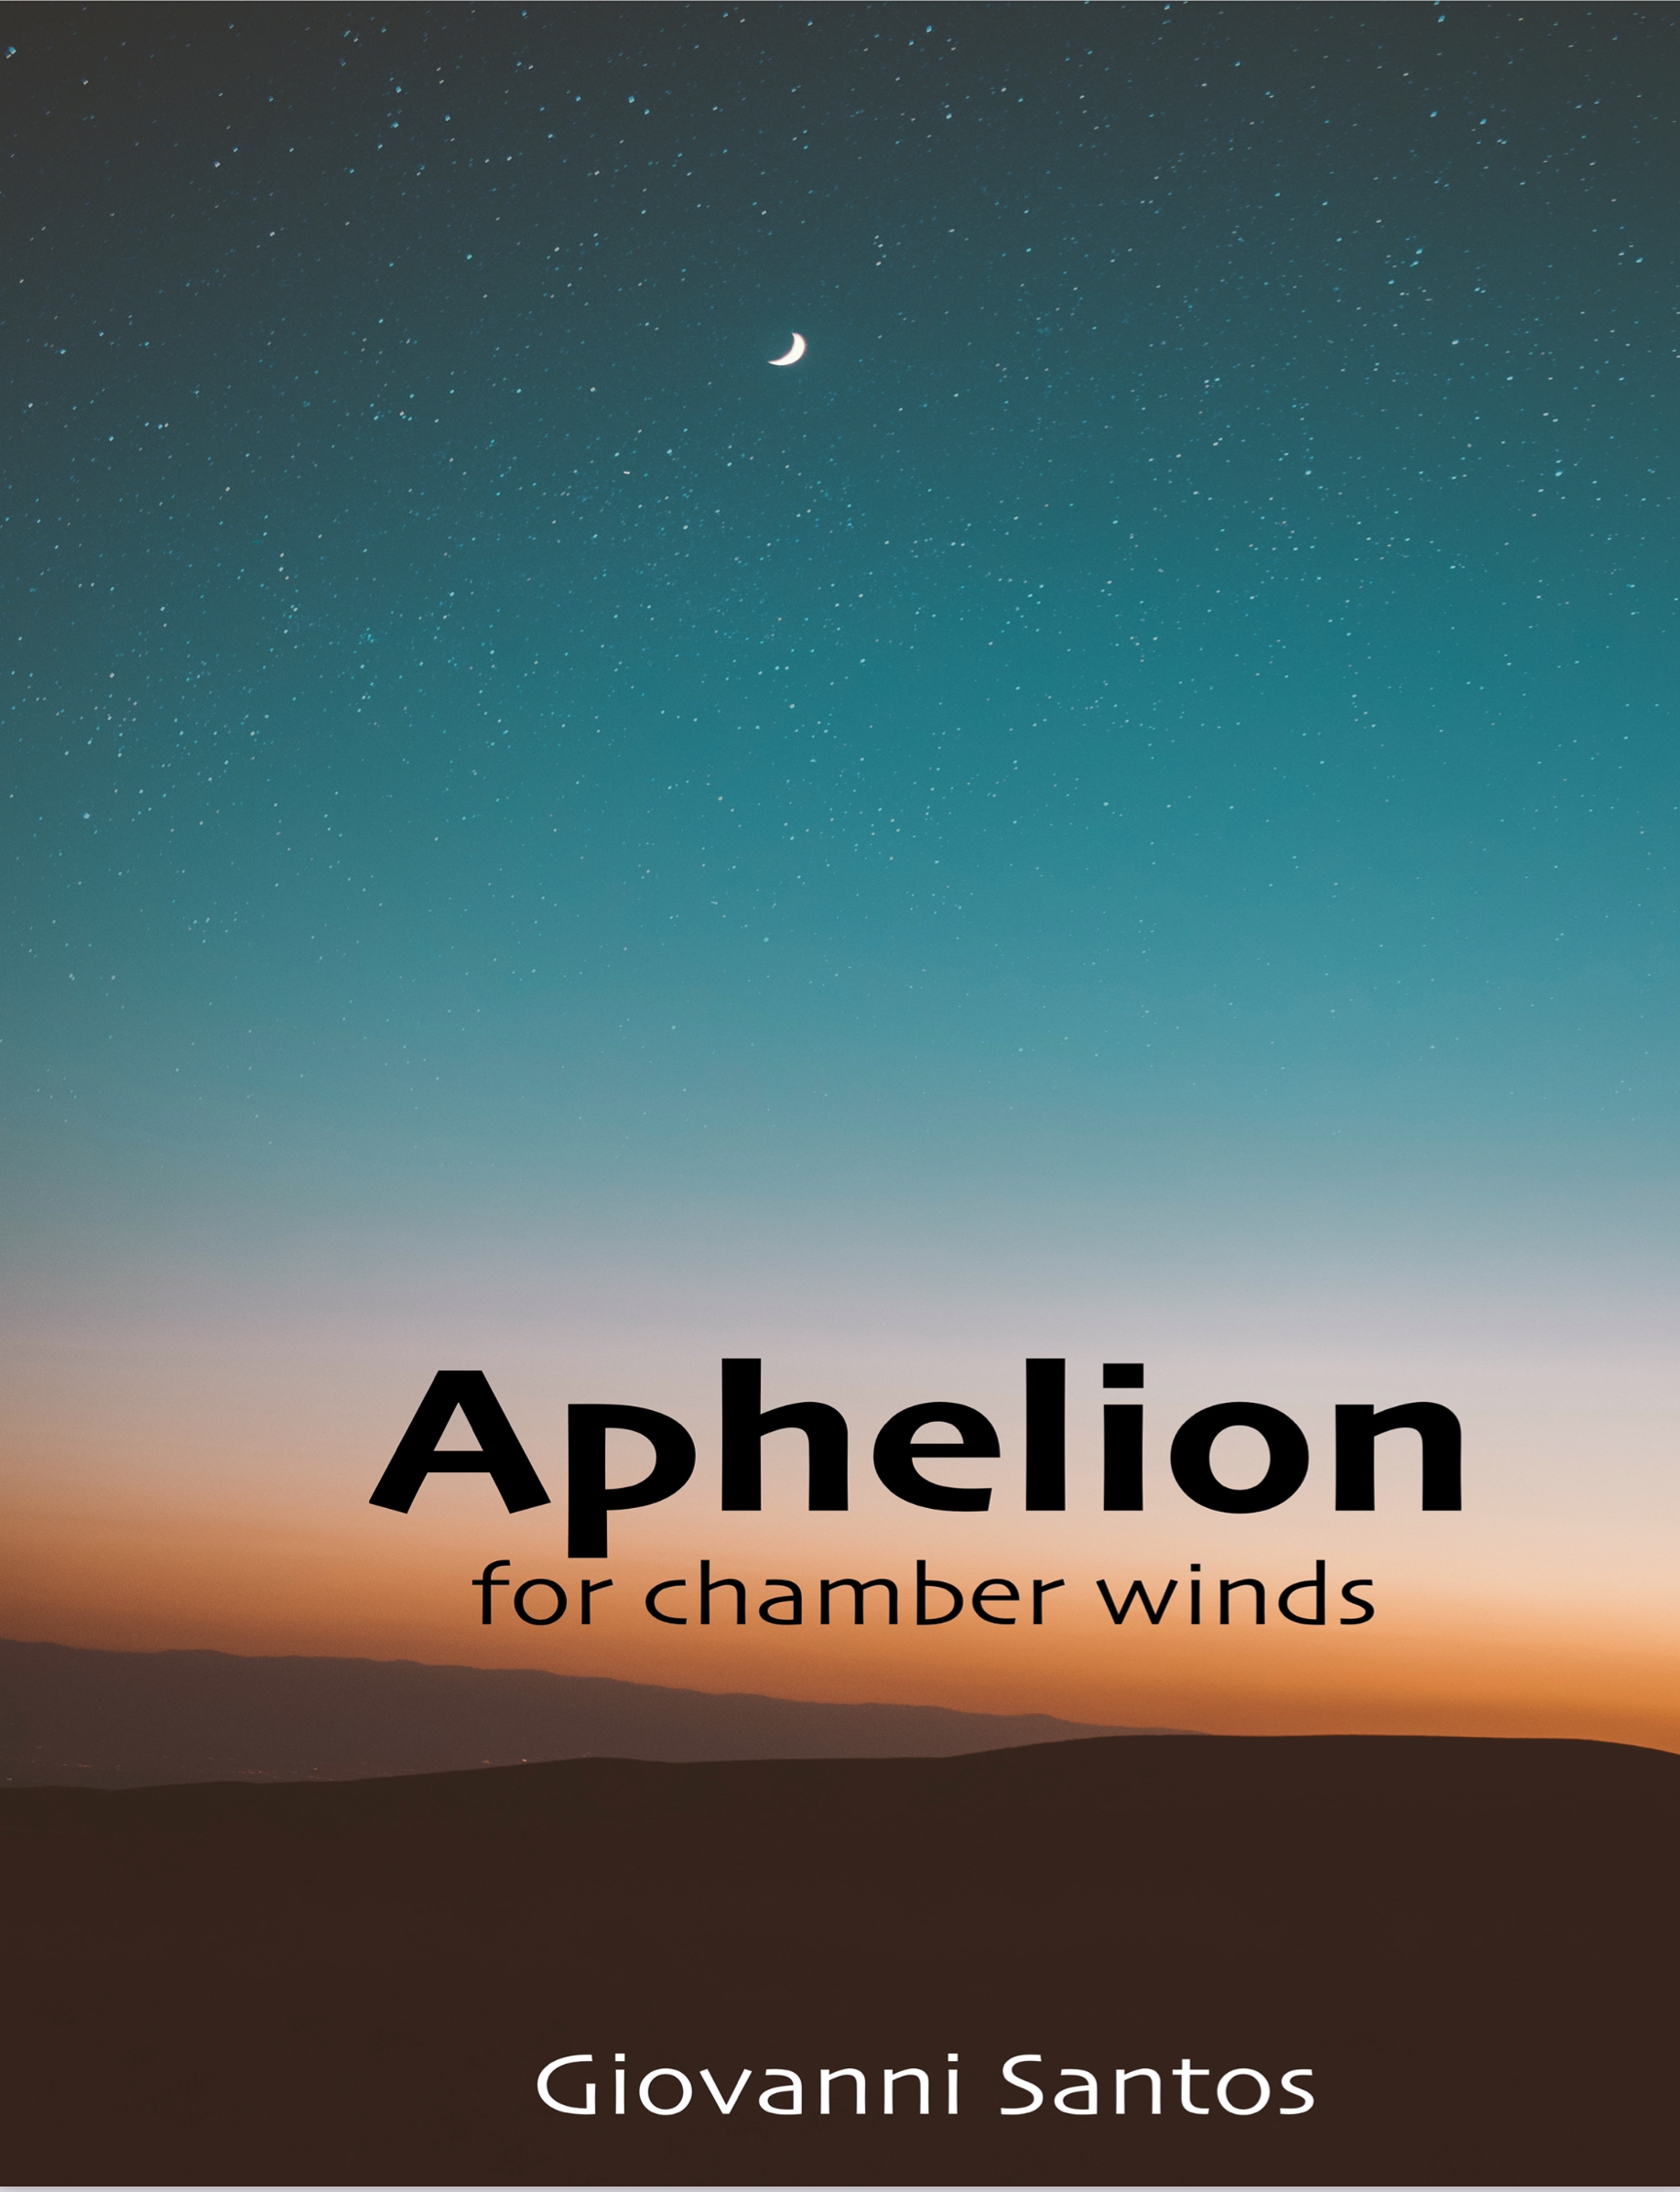 Aphelion by Giovanni Santos